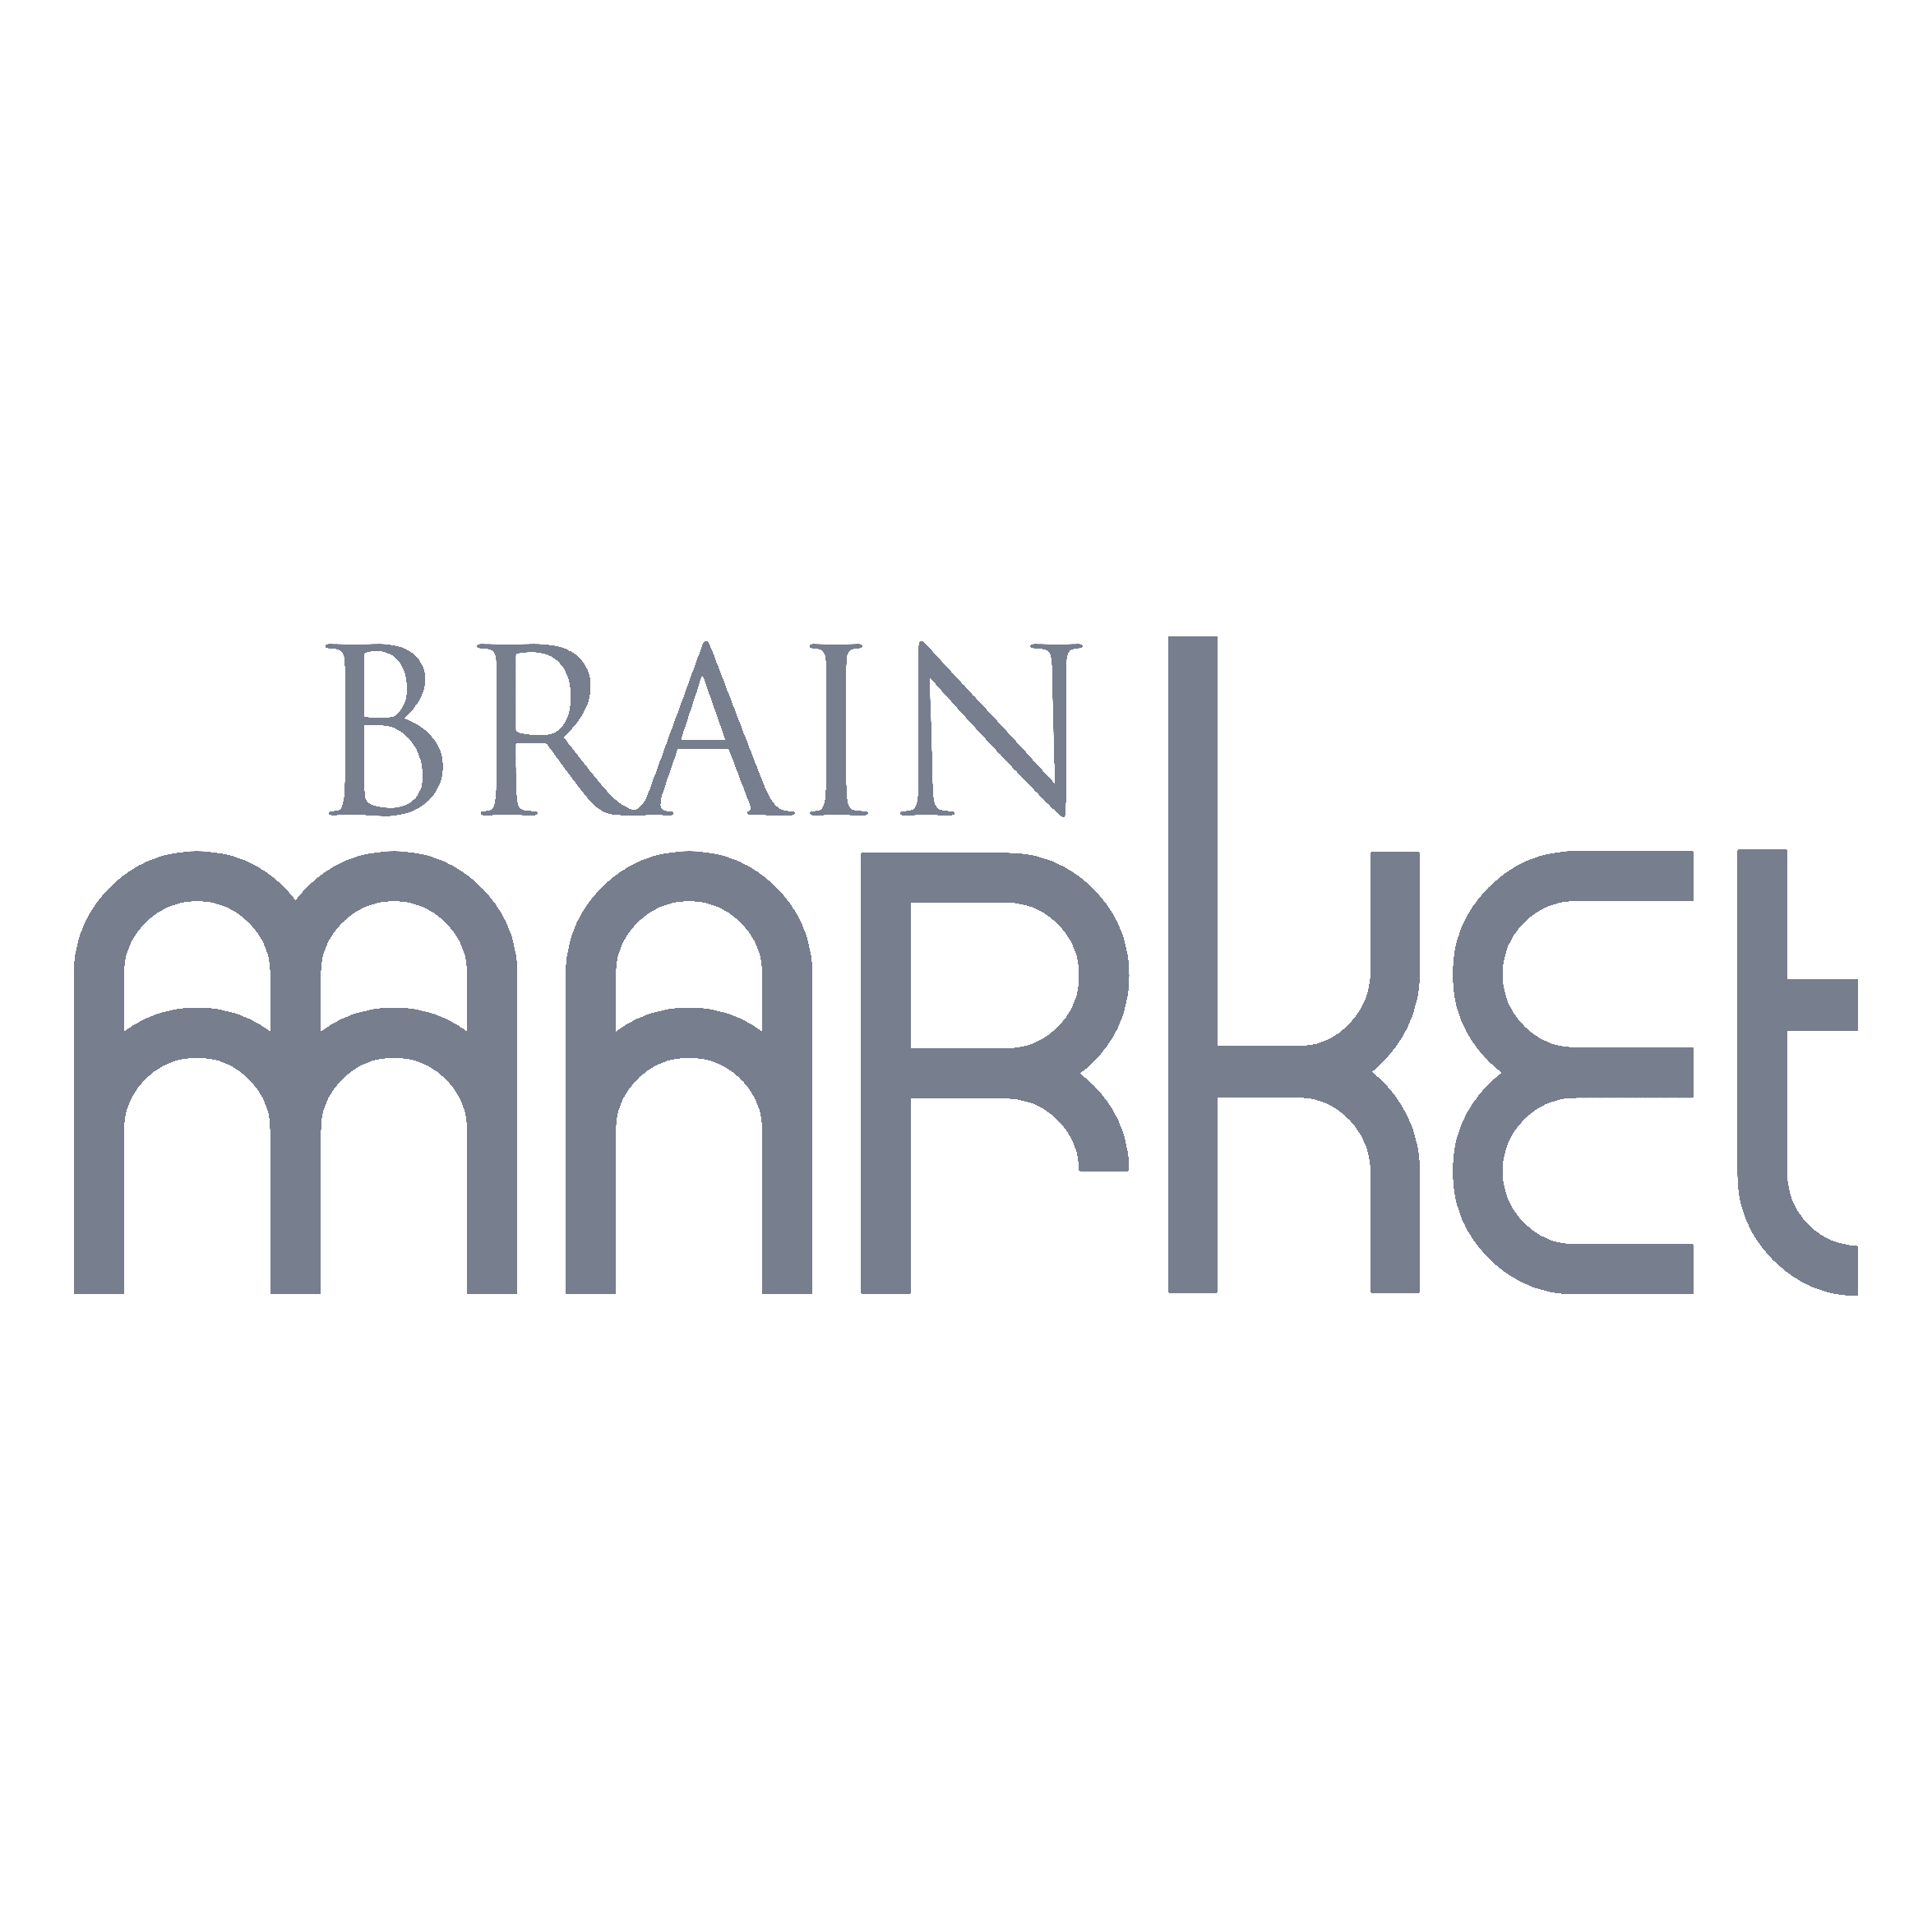 BrainMarket